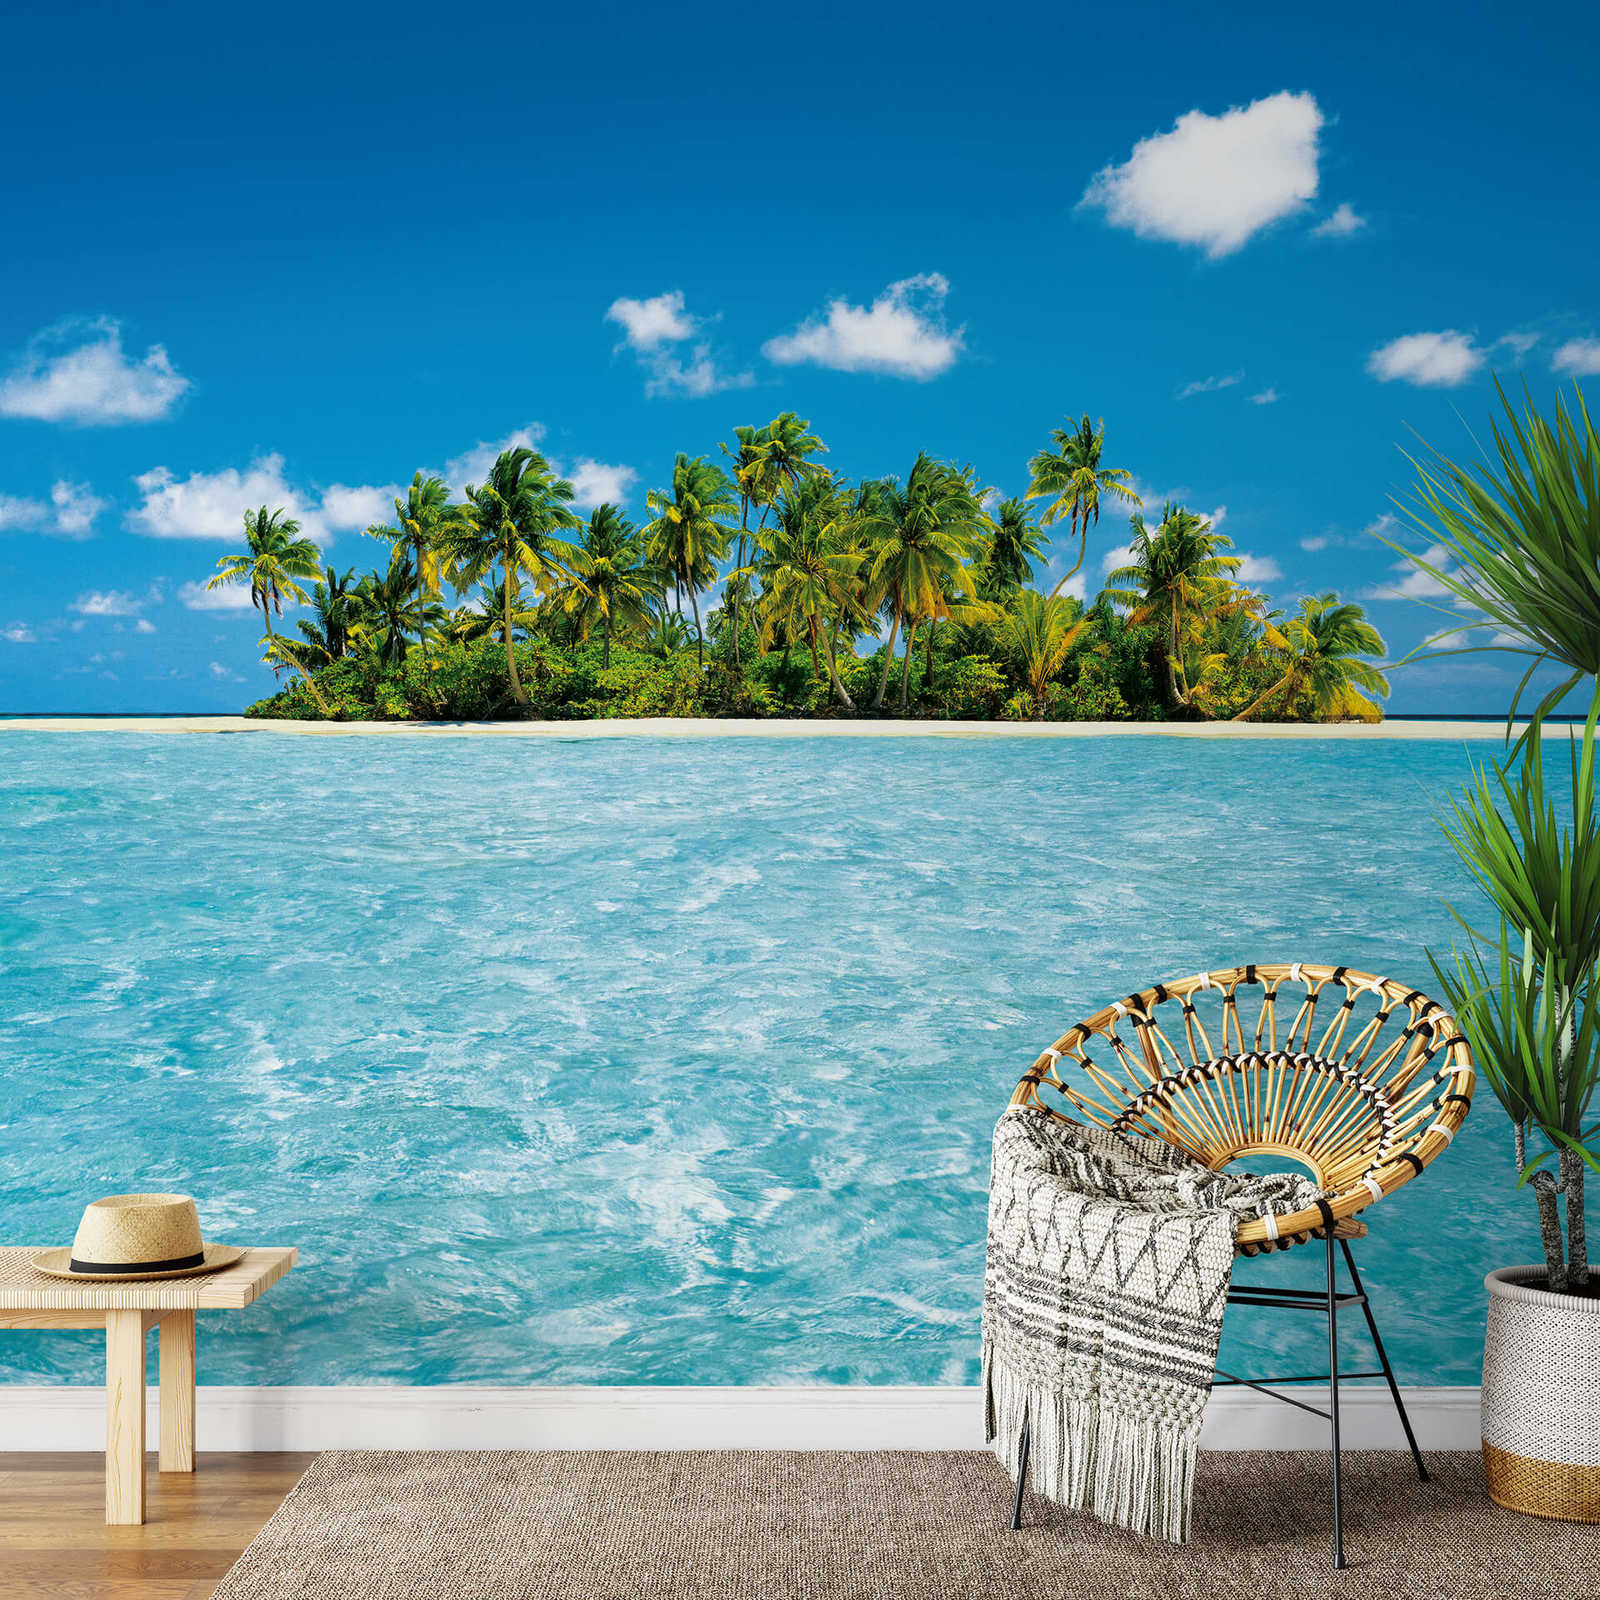             Paradiso dei mari del sud Maldive, isola delle palme, carta da parati
        